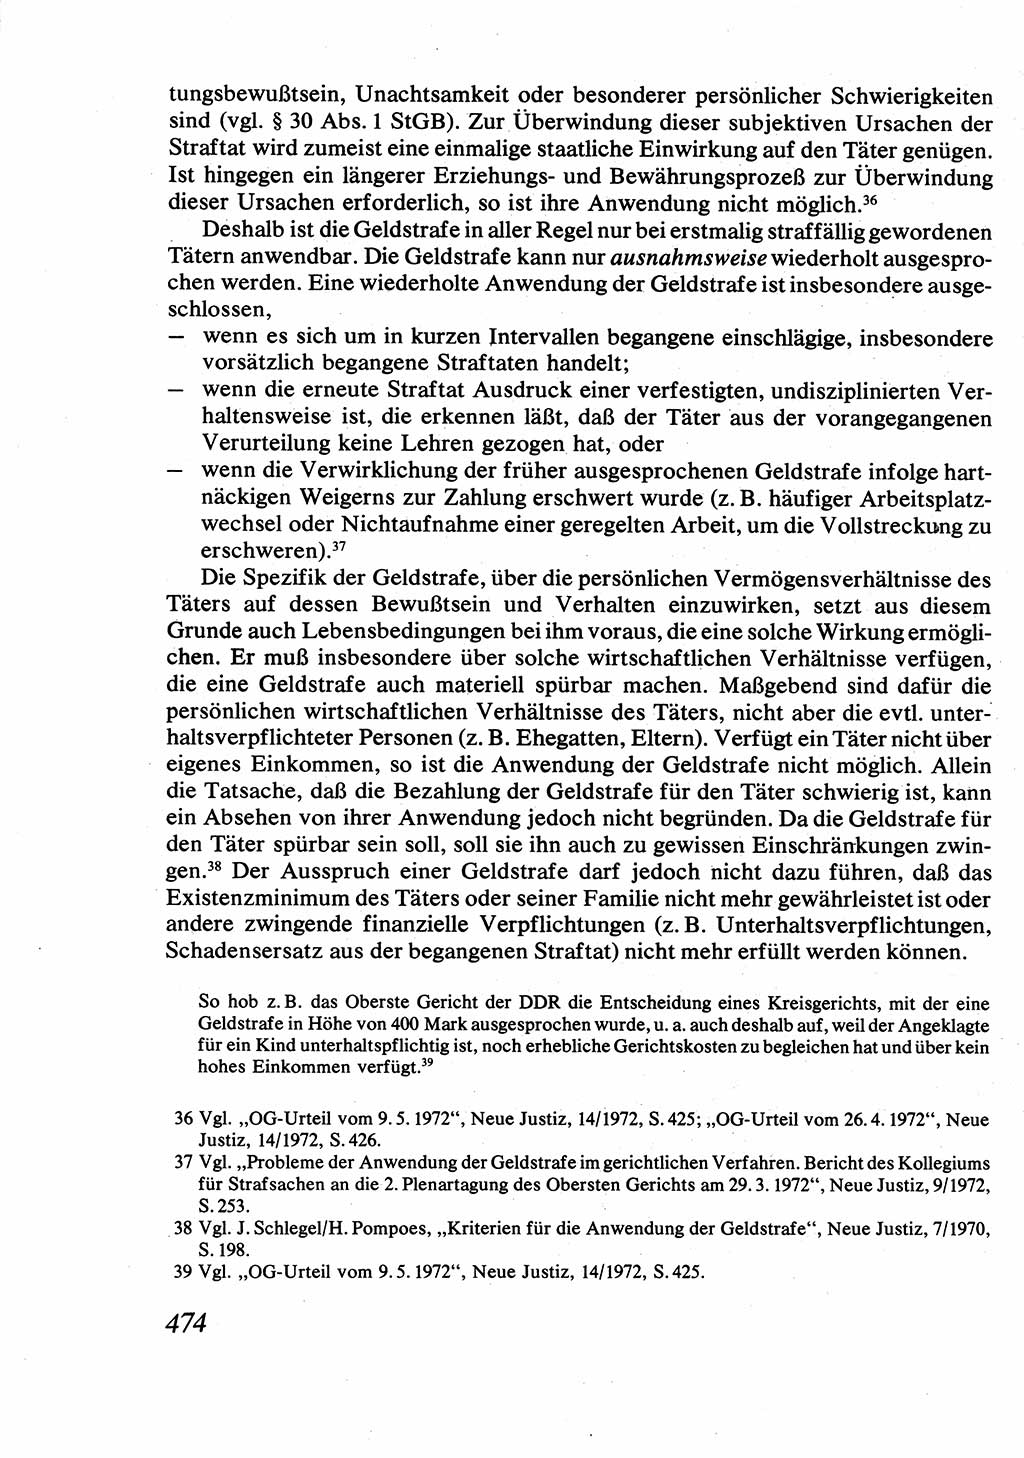 Strafrecht [Deutsche Demokratische Republik (DDR)], Allgemeiner Teil, Lehrbuch 1976, Seite 474 (Strafr. DDR AT Lb. 1976, S. 474)